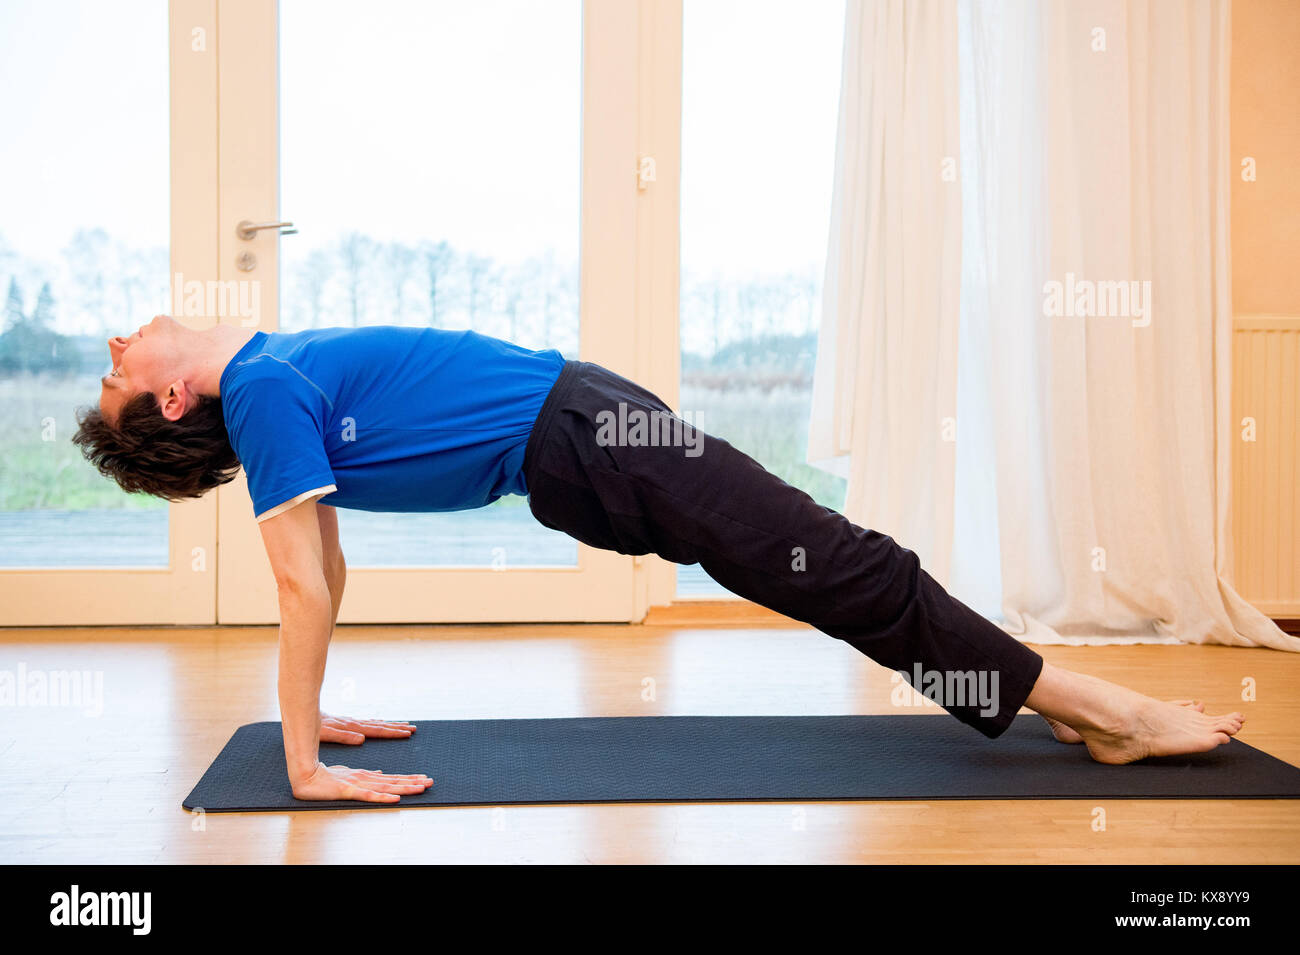 El hombre practicando yoga en interiores, en un espacio de retiro haciendo la postura de la tabla - Purvottanasana ascendente Foto de stock